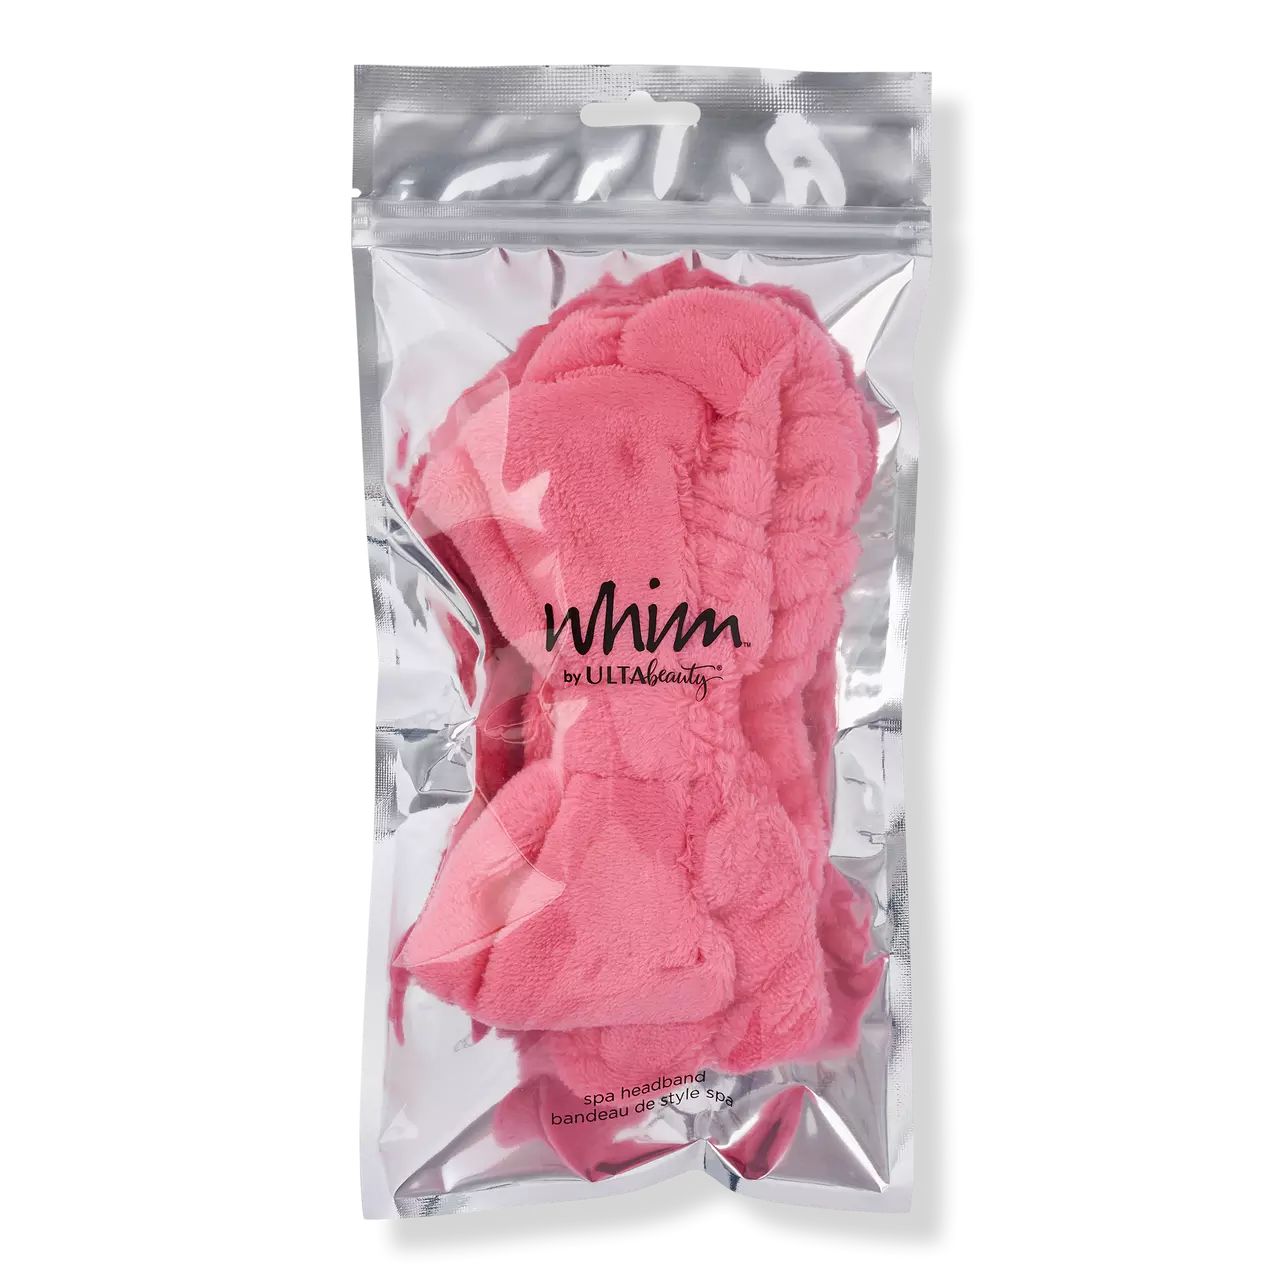 WHIM by Ulta Beauty Pink Plush Headband | Ulta